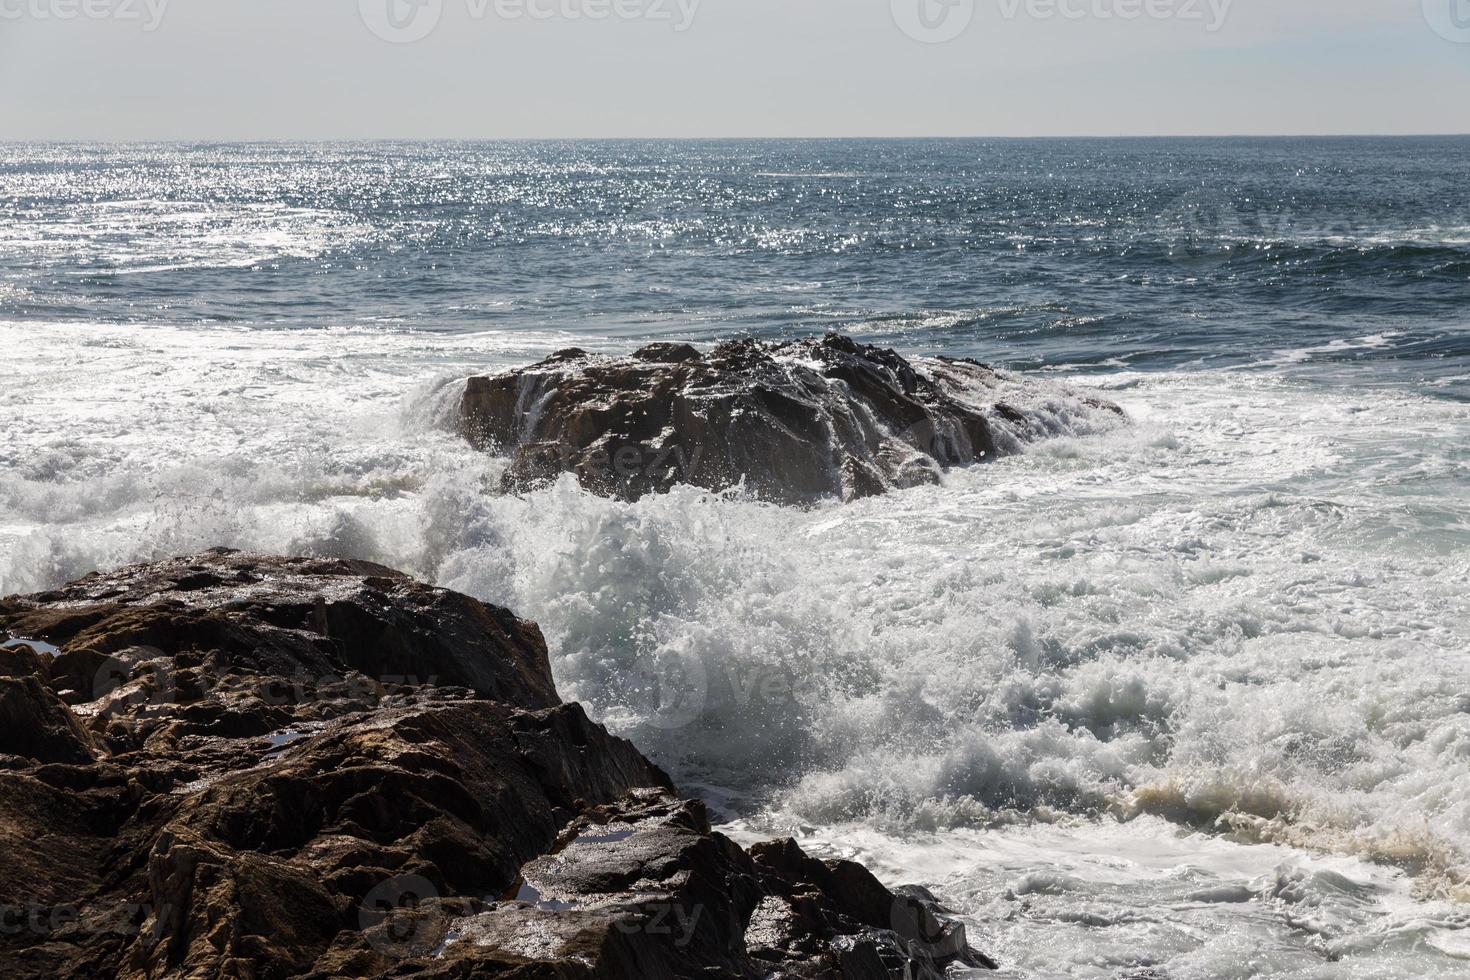 olas rompiendo en la costa portuguesa foto